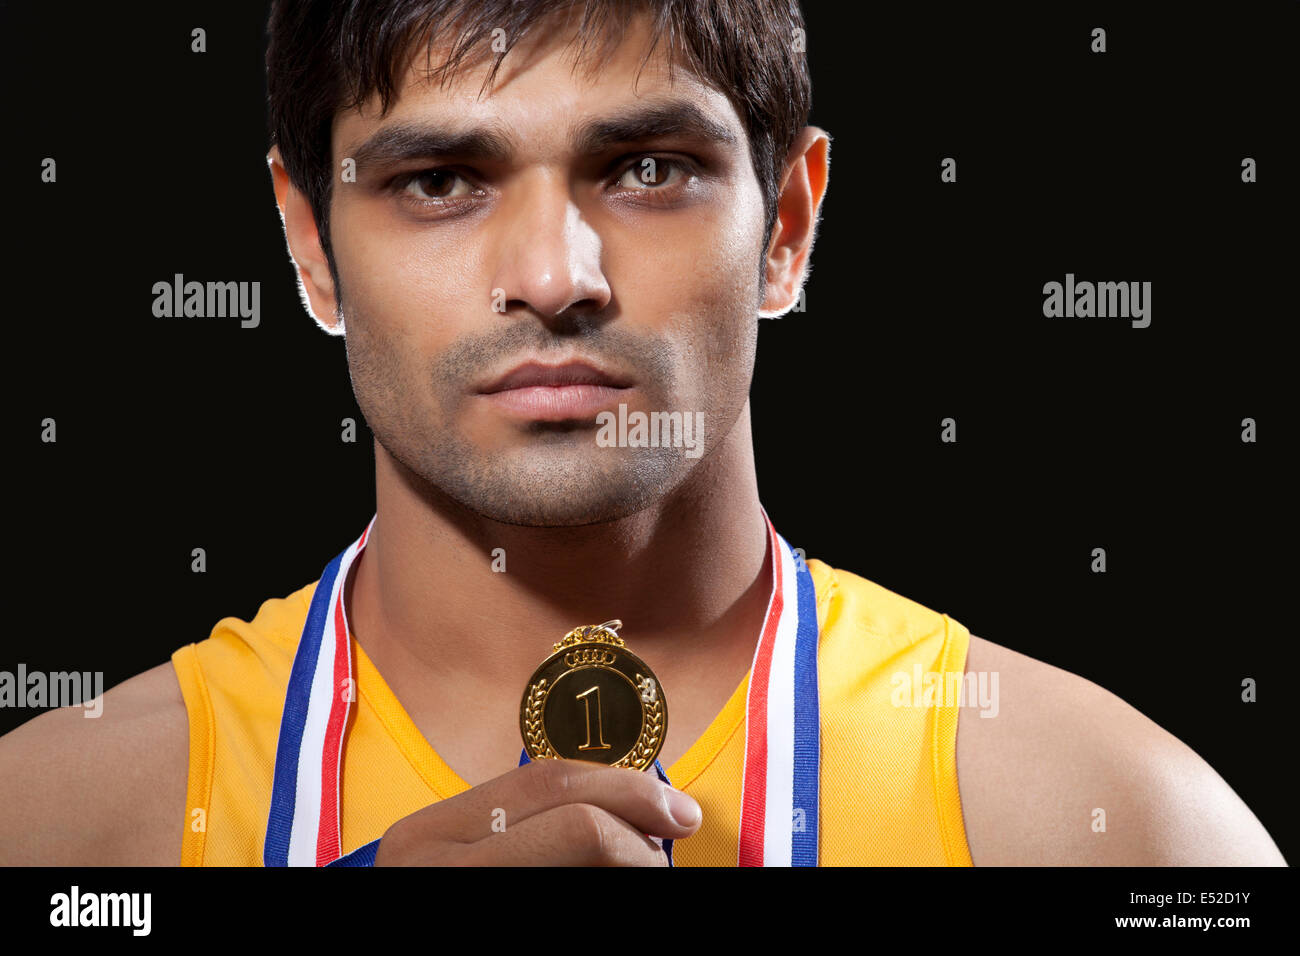 Close-up portrait of young male runner holding médaille d'isolé sur fond noir Banque D'Images